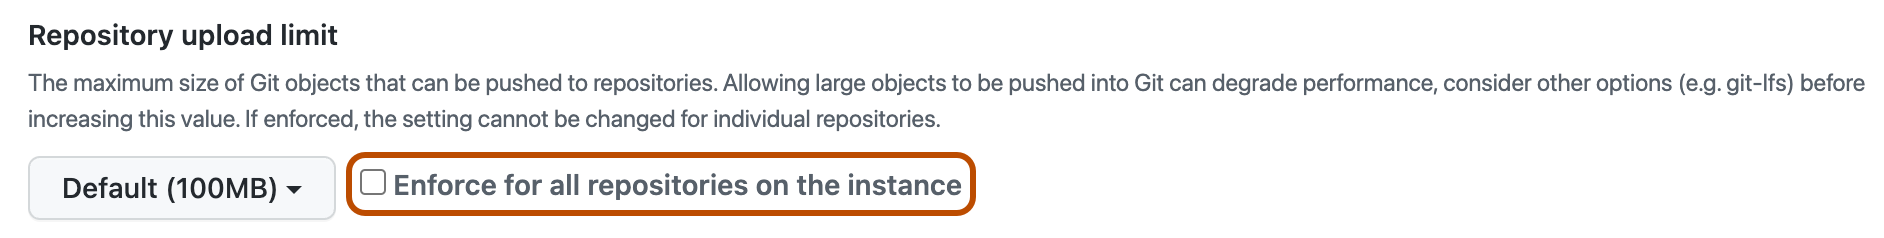 Capture d'écran de la section de stratégie « Limite de chargement de dépôt ». La case à cocher « Appliquer sur tous les dépôts » est mise en évidence avec un encadré orange.